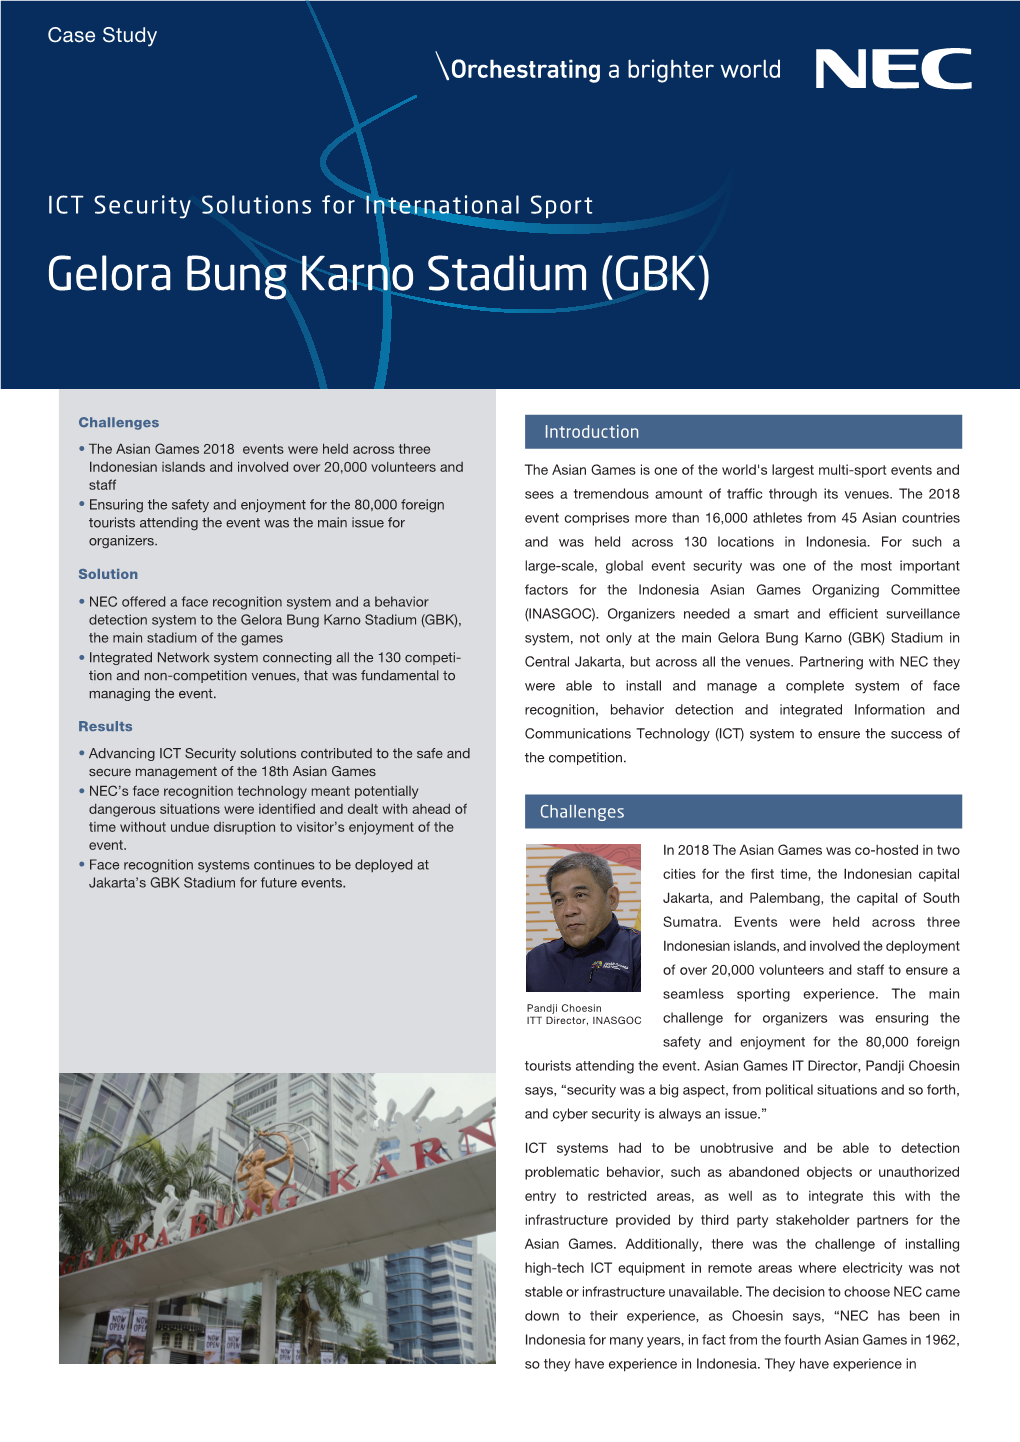 Gelora Bung Karno Stadium (GBK)